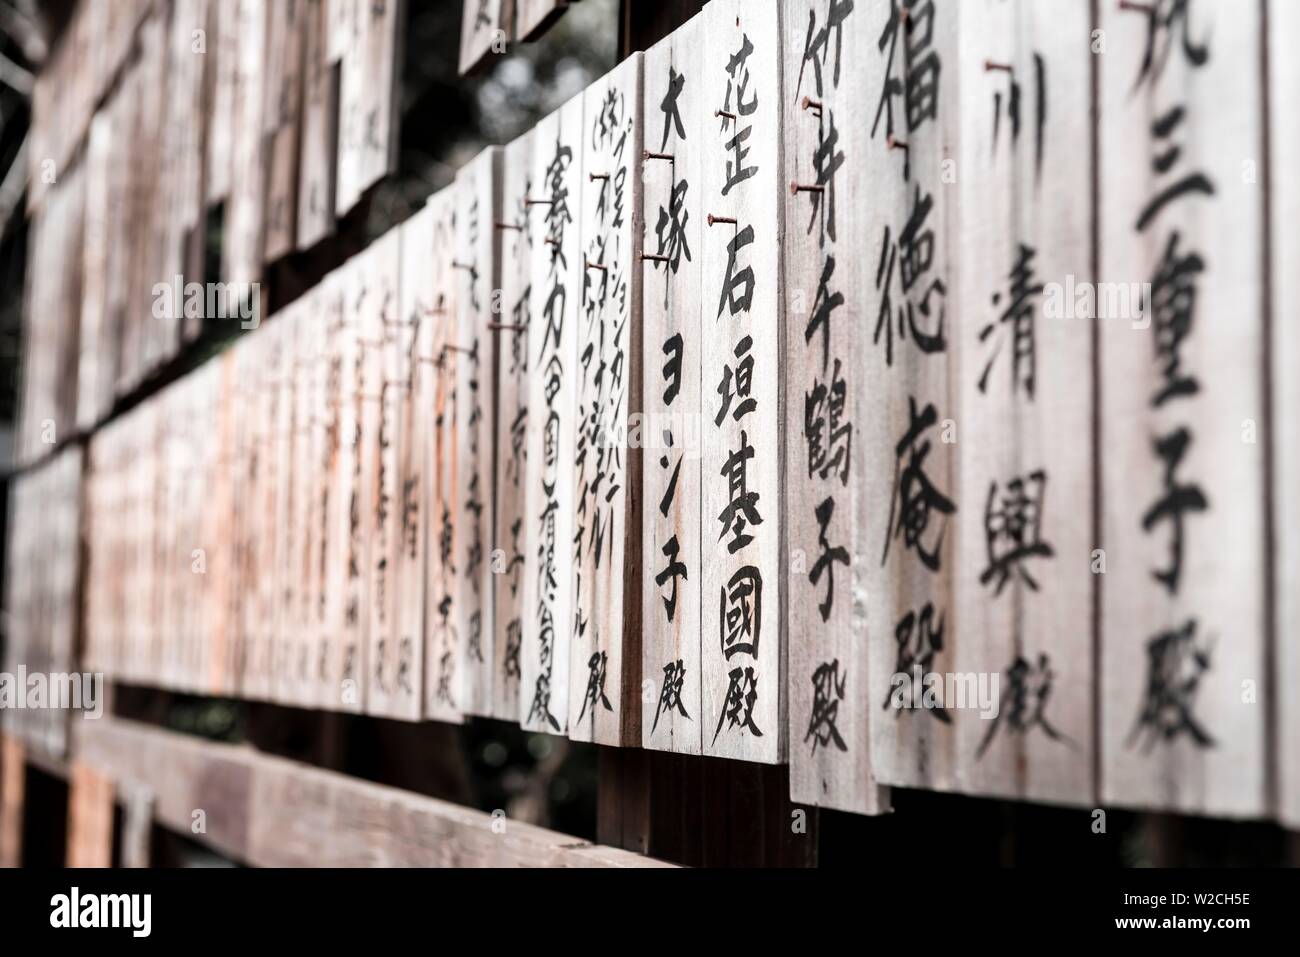 Holzplatten mit japanischen Zeichen beschrieben, Shinto Schrein Shiba Toshogu, Tempel, Tokio, Japan Stockfoto